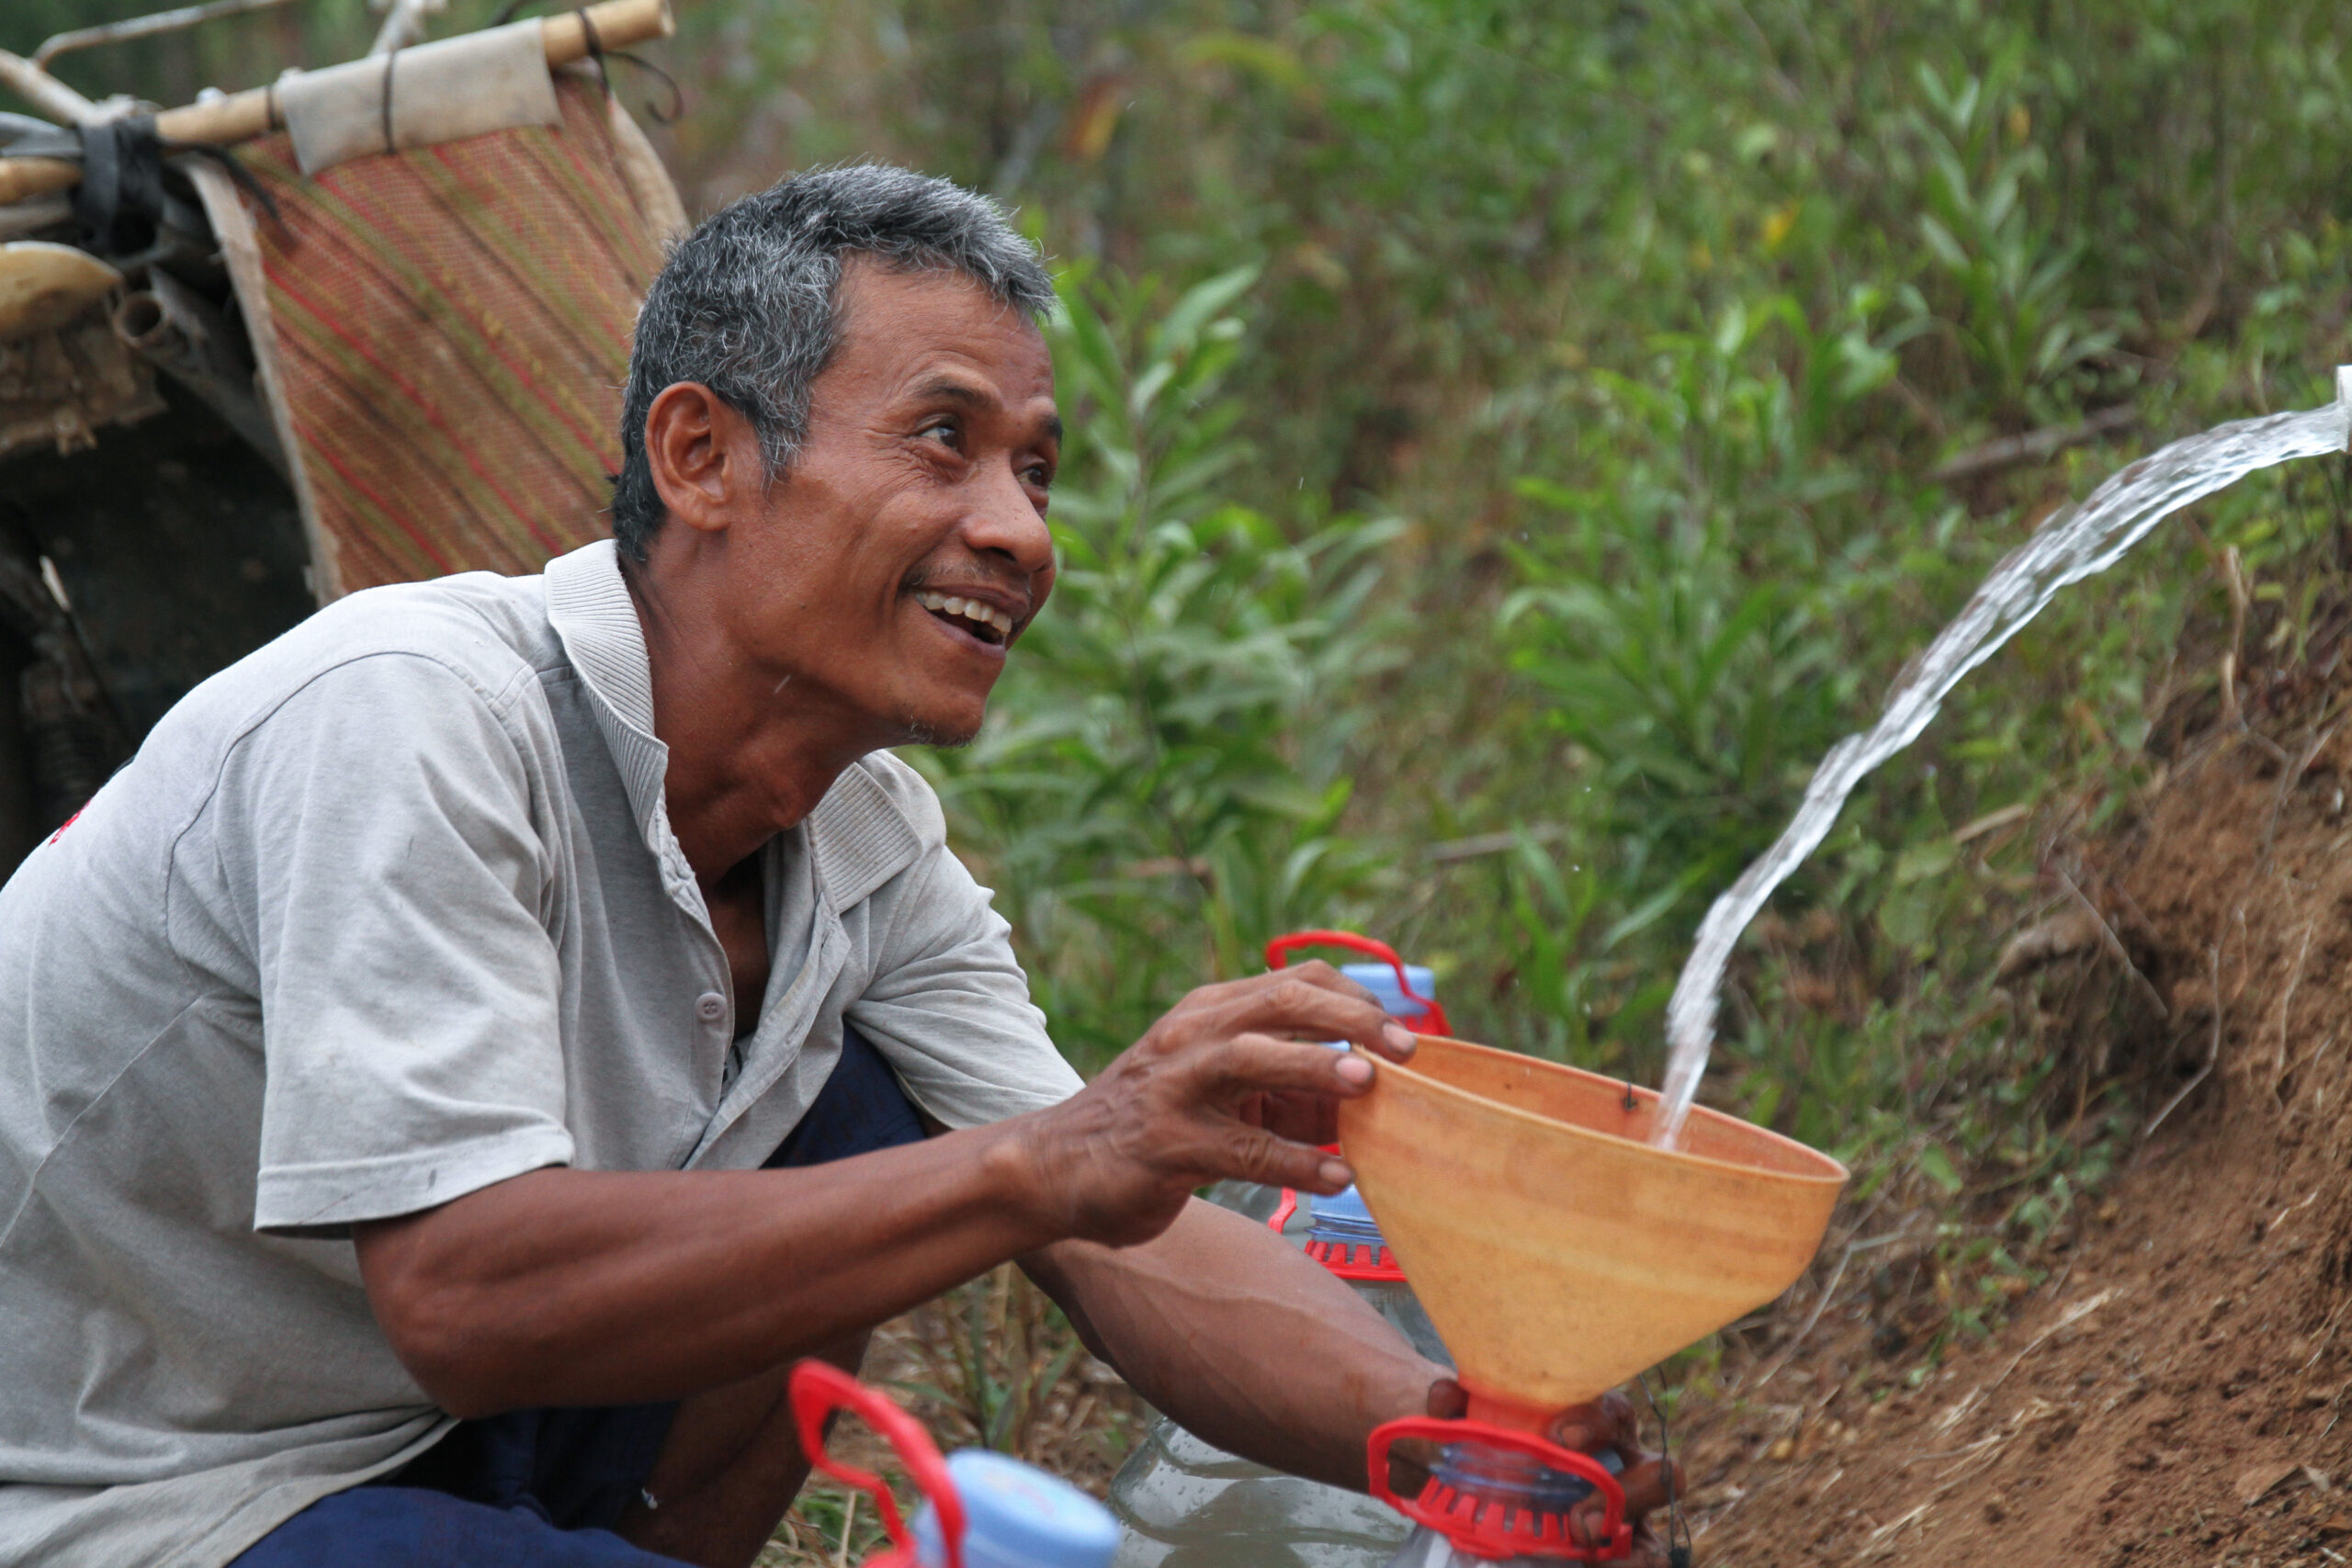 سكان قرية سيمارجليه الجفاف، مبادرة إنسانية تساعد في توزيع 1200 لتر من المياه النظيفة